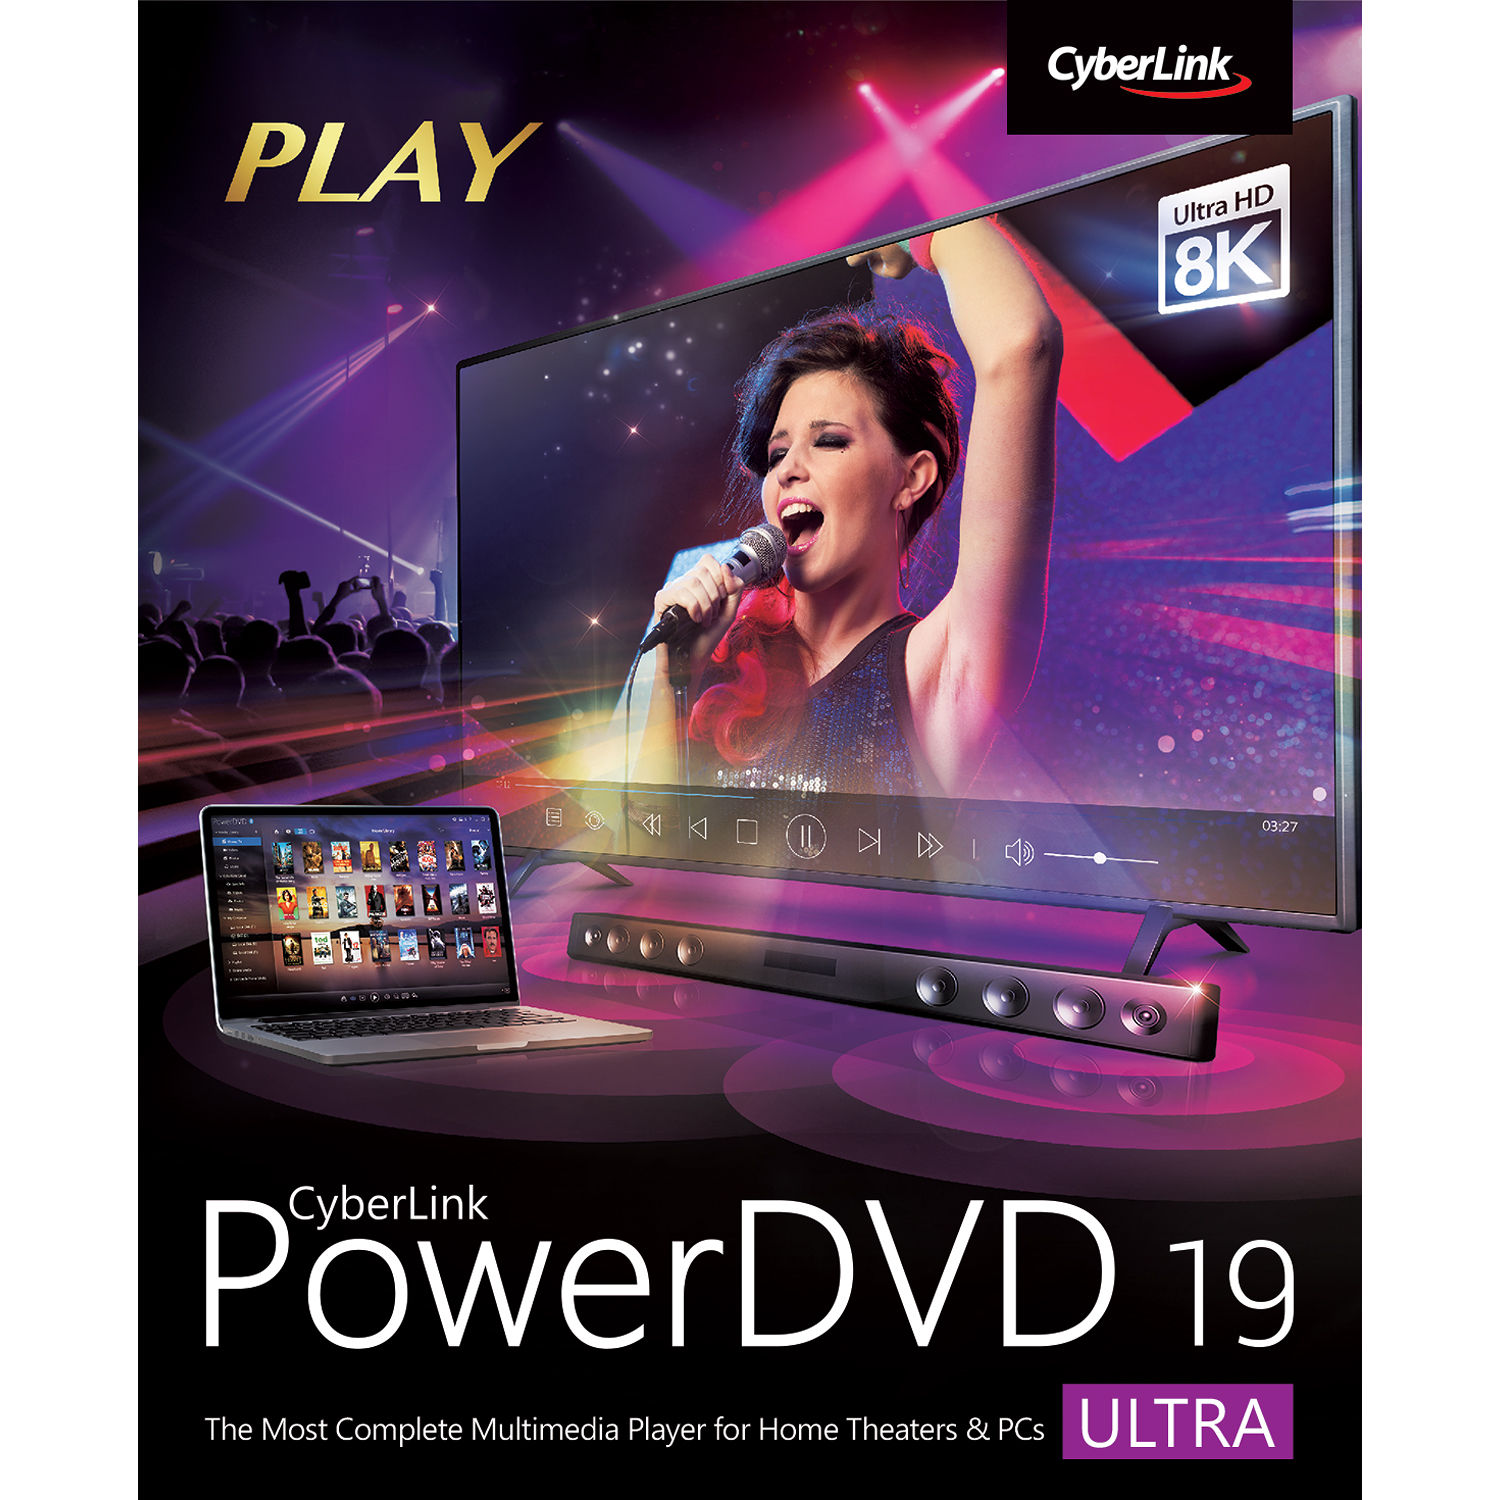 Cyberlink PowerDVD 8 Ultra buy online